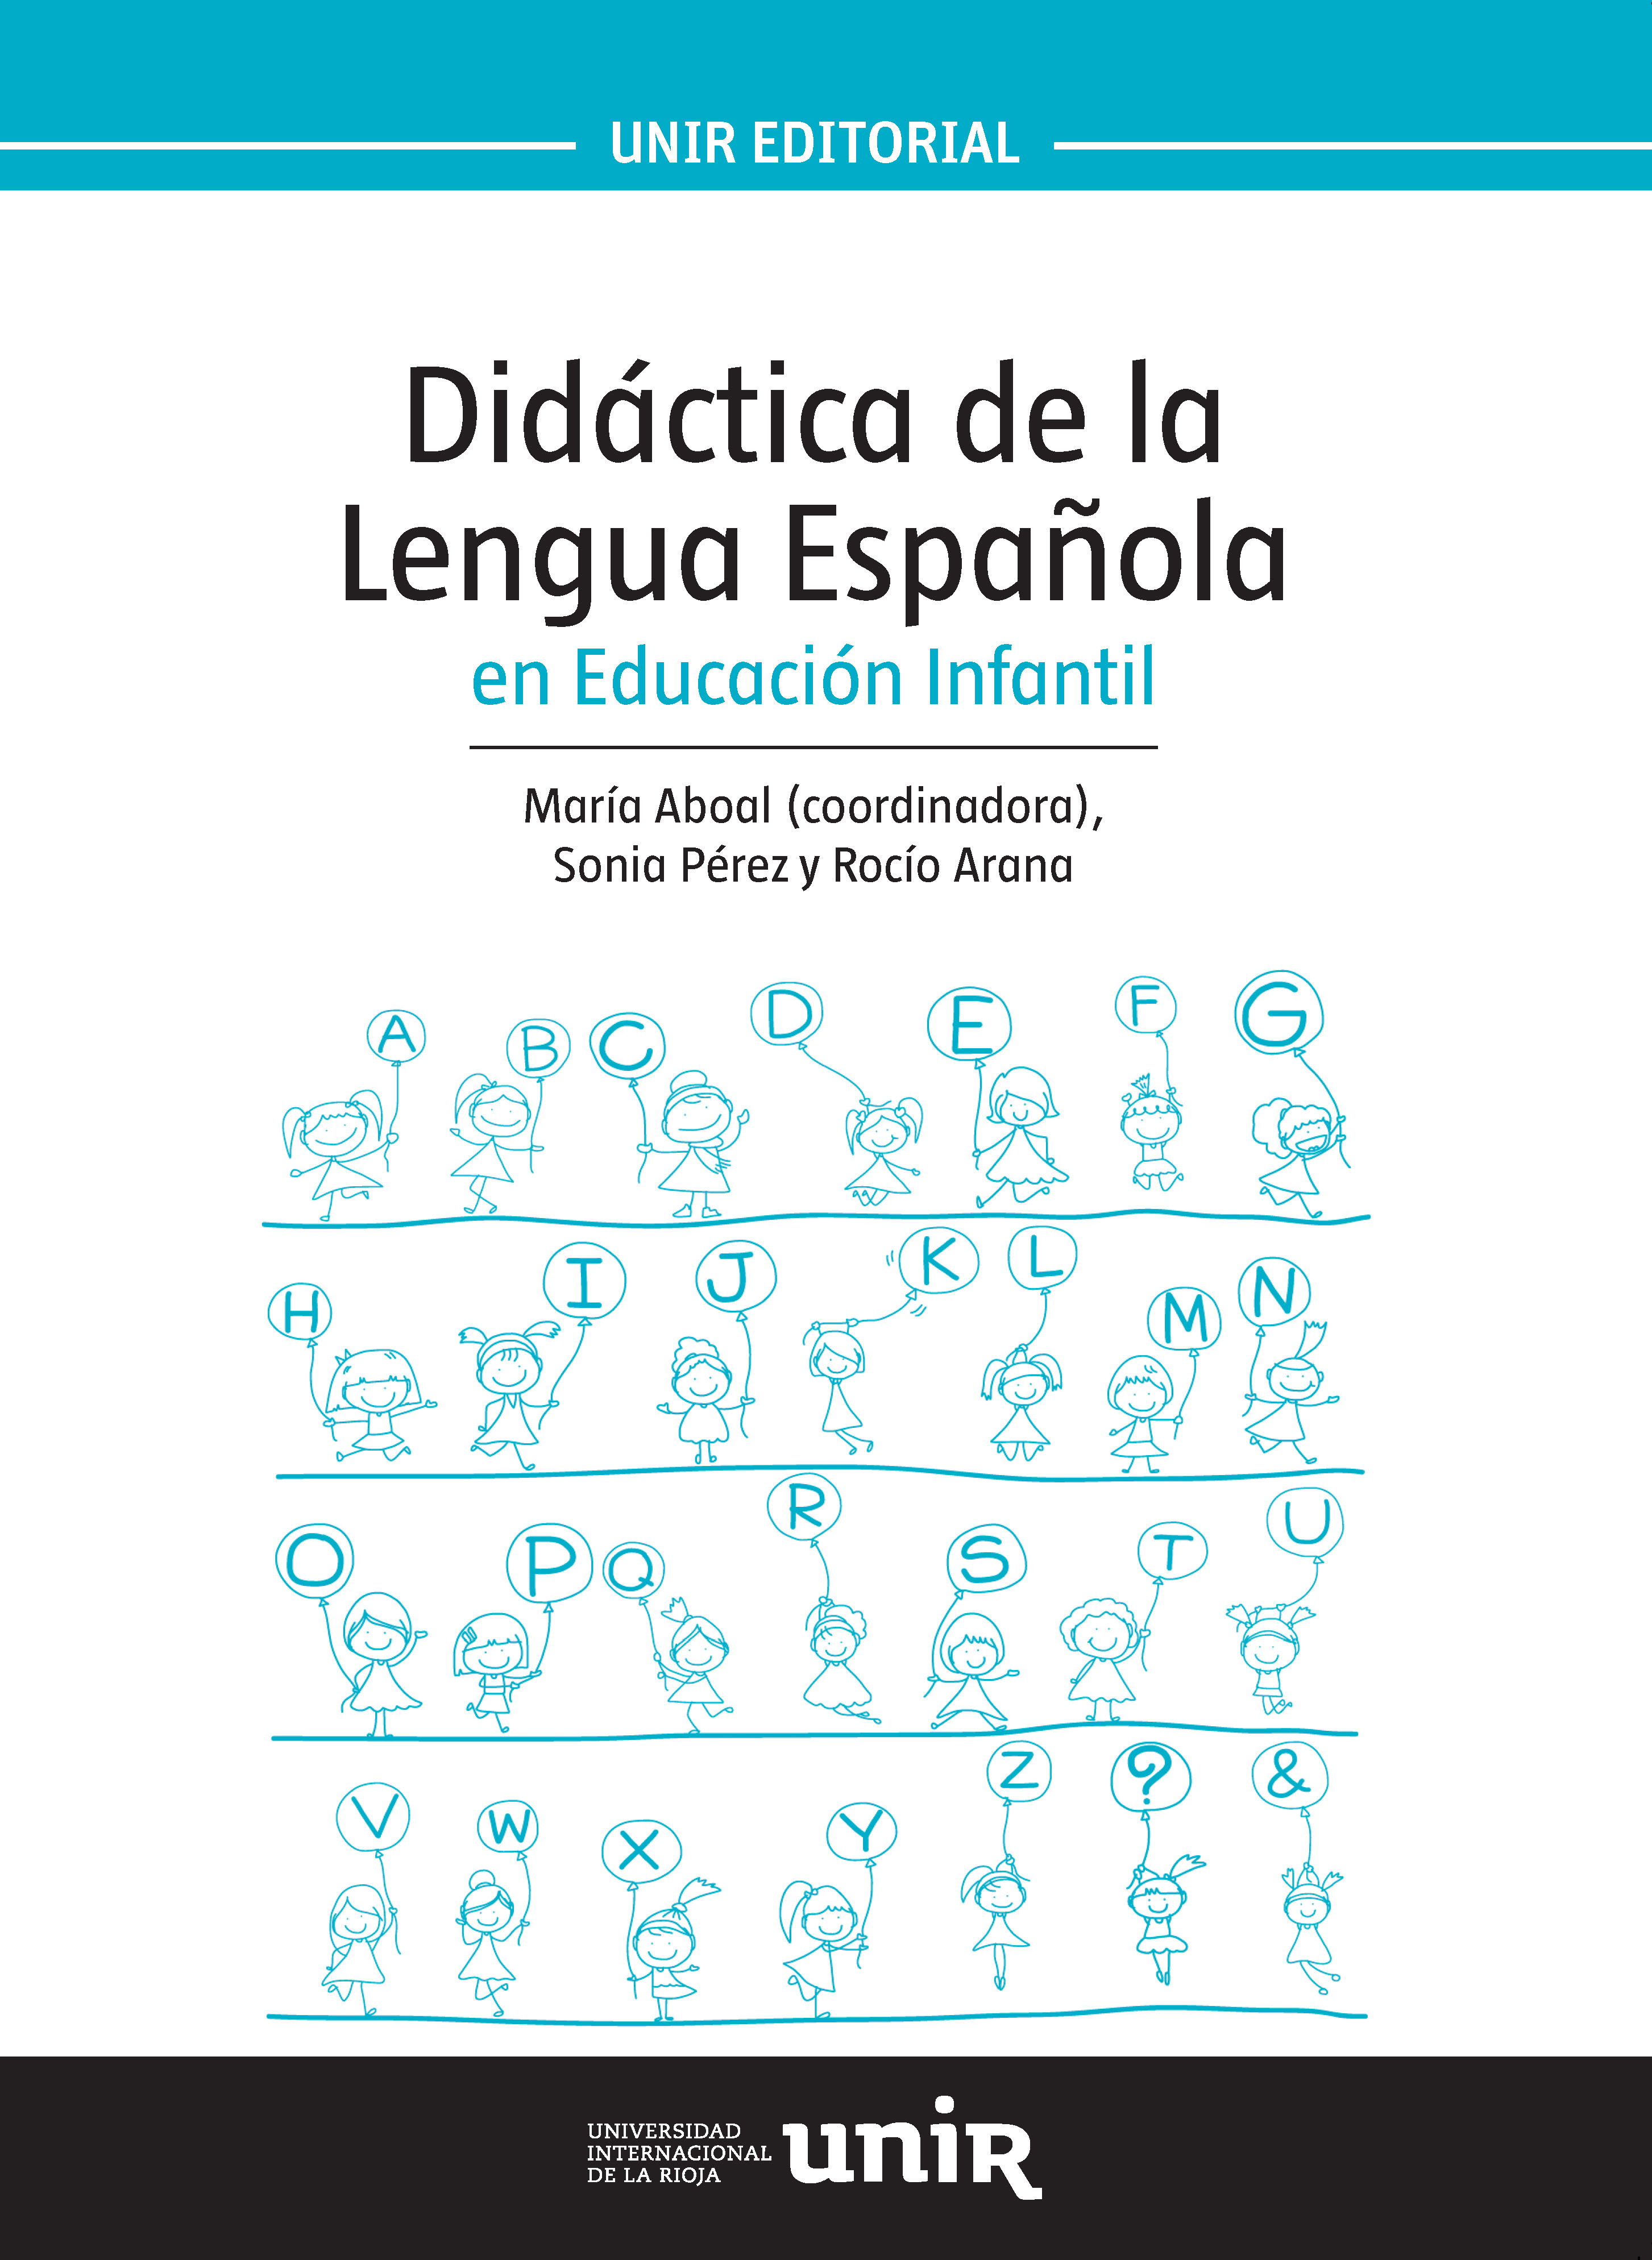 DIDÁCTICA DE LA LENGUA ESPAÑOLA EN EDUCACIÓN INFANTIL